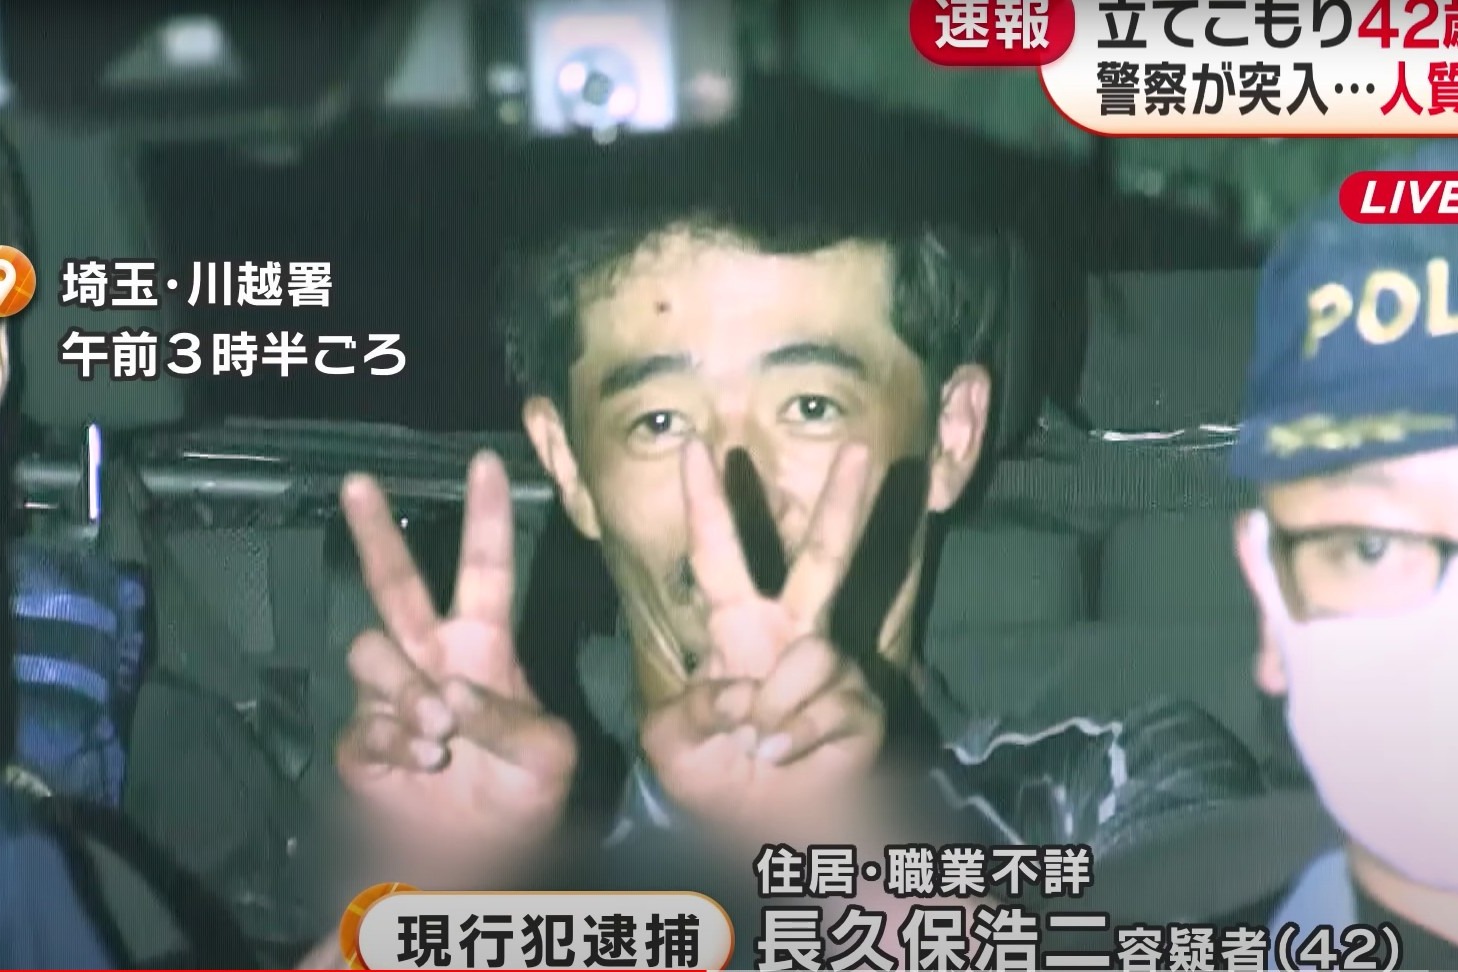 日本男子坐監上癮 剛出獄即犯案 稱想回到監獄甚至想被判死刑